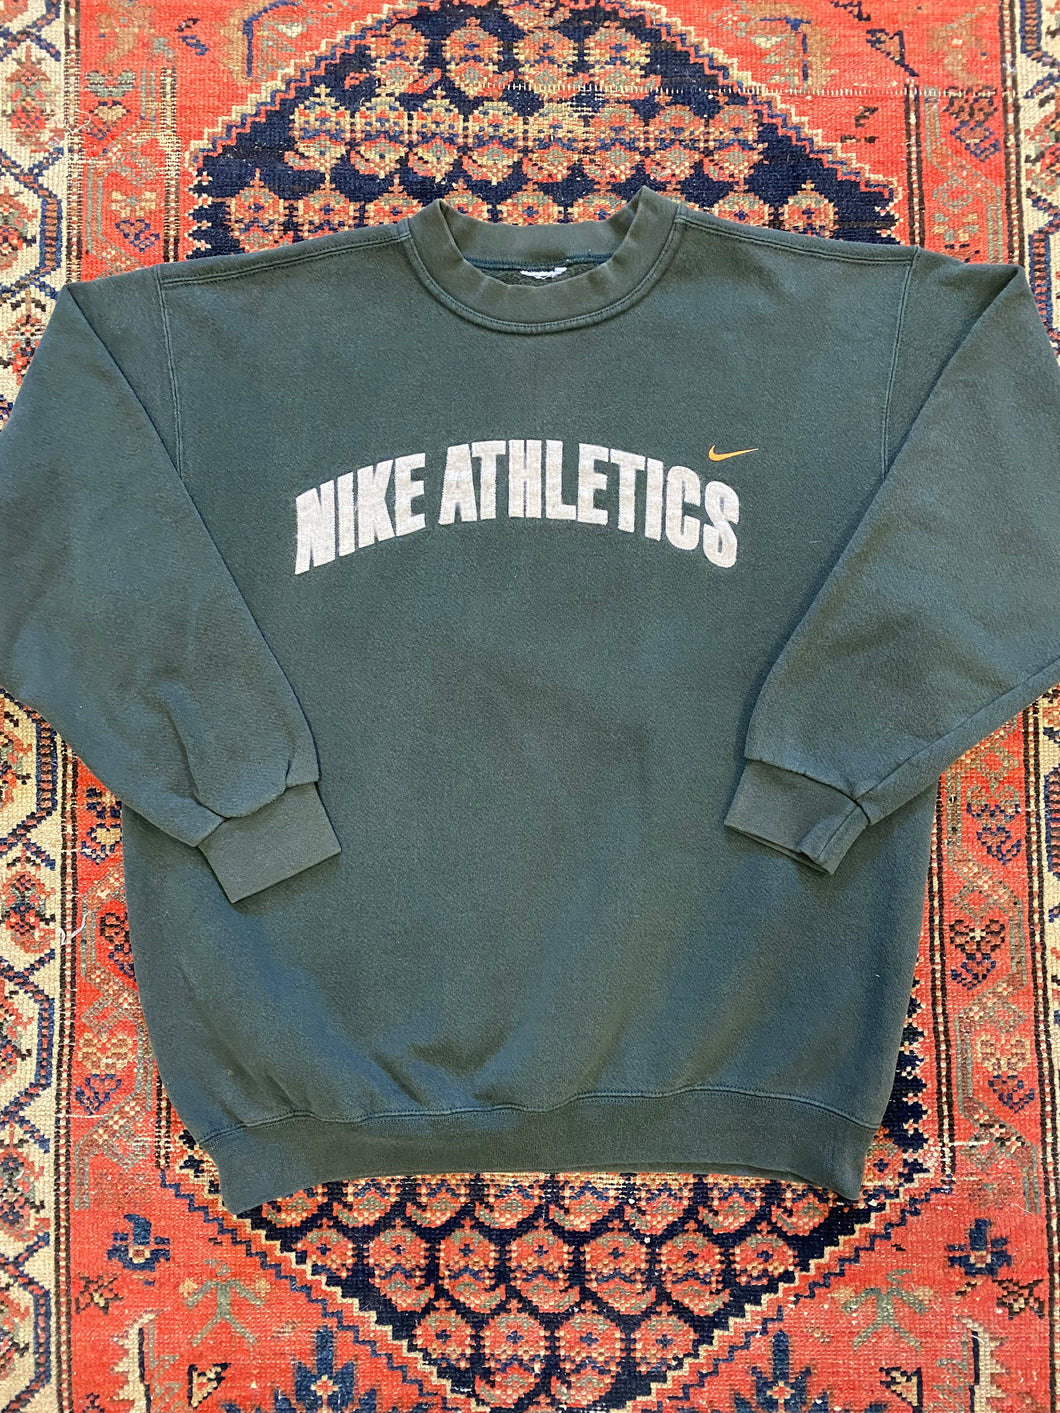 Vintage Nike athletics Crewneck - M/L